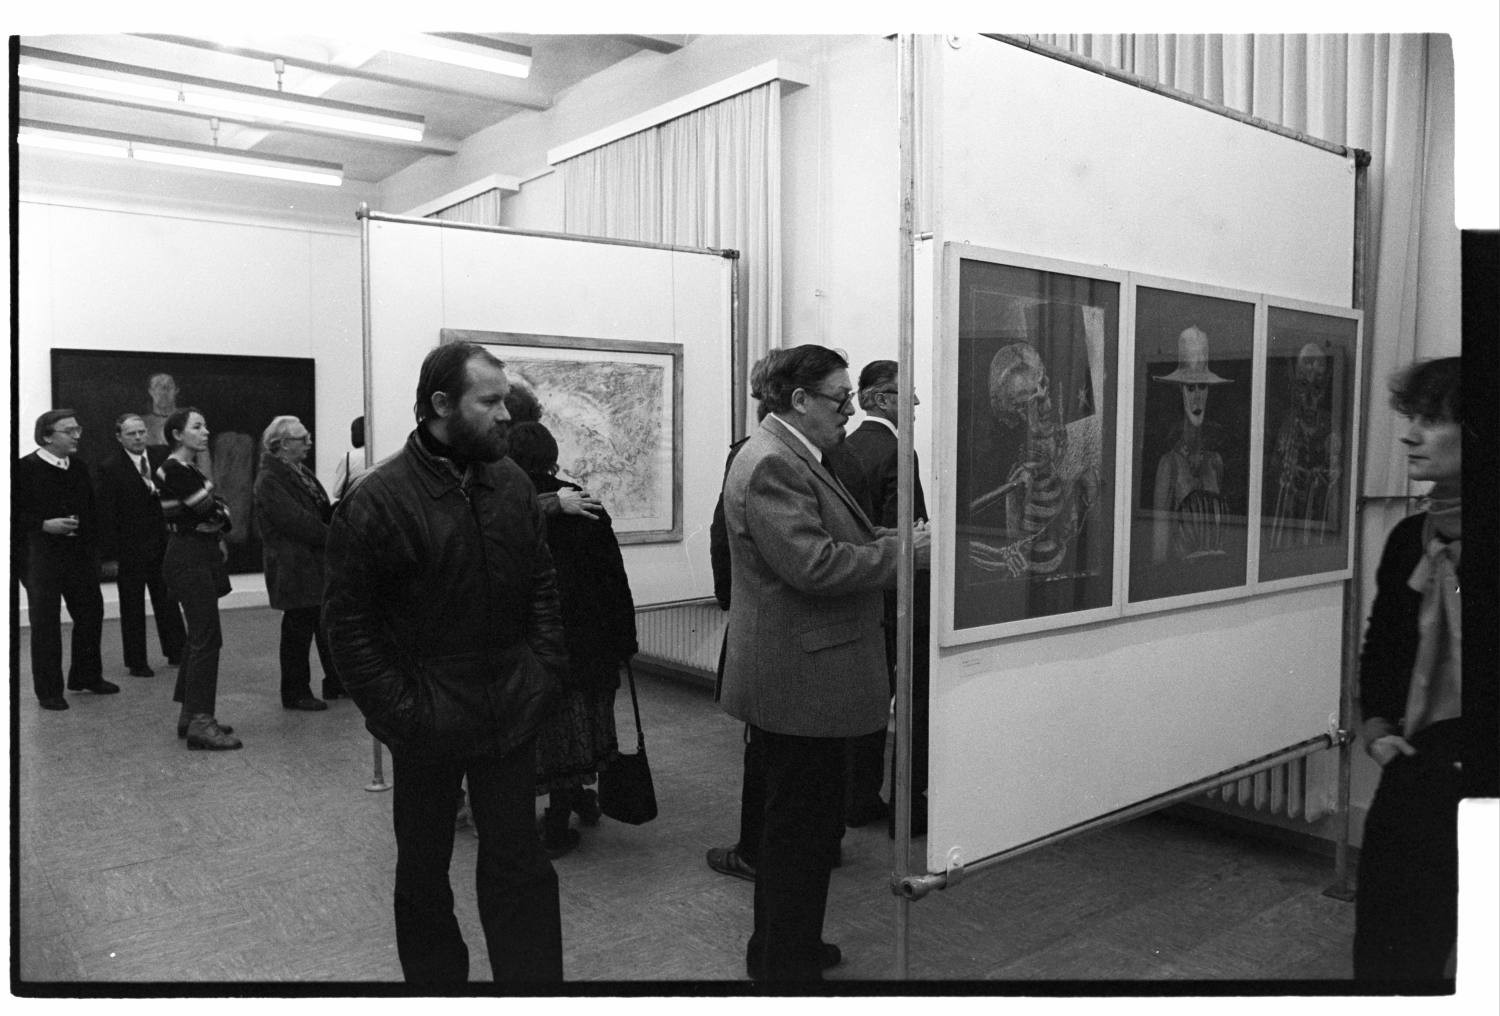 Kleinbildnegative: Eröffnungsveranstaltung, Ausstellung "Schöneberger Künstler stellen aus", 1984 (Museen Tempelhof-Schöneberg/Jürgen Henschel RR-F)